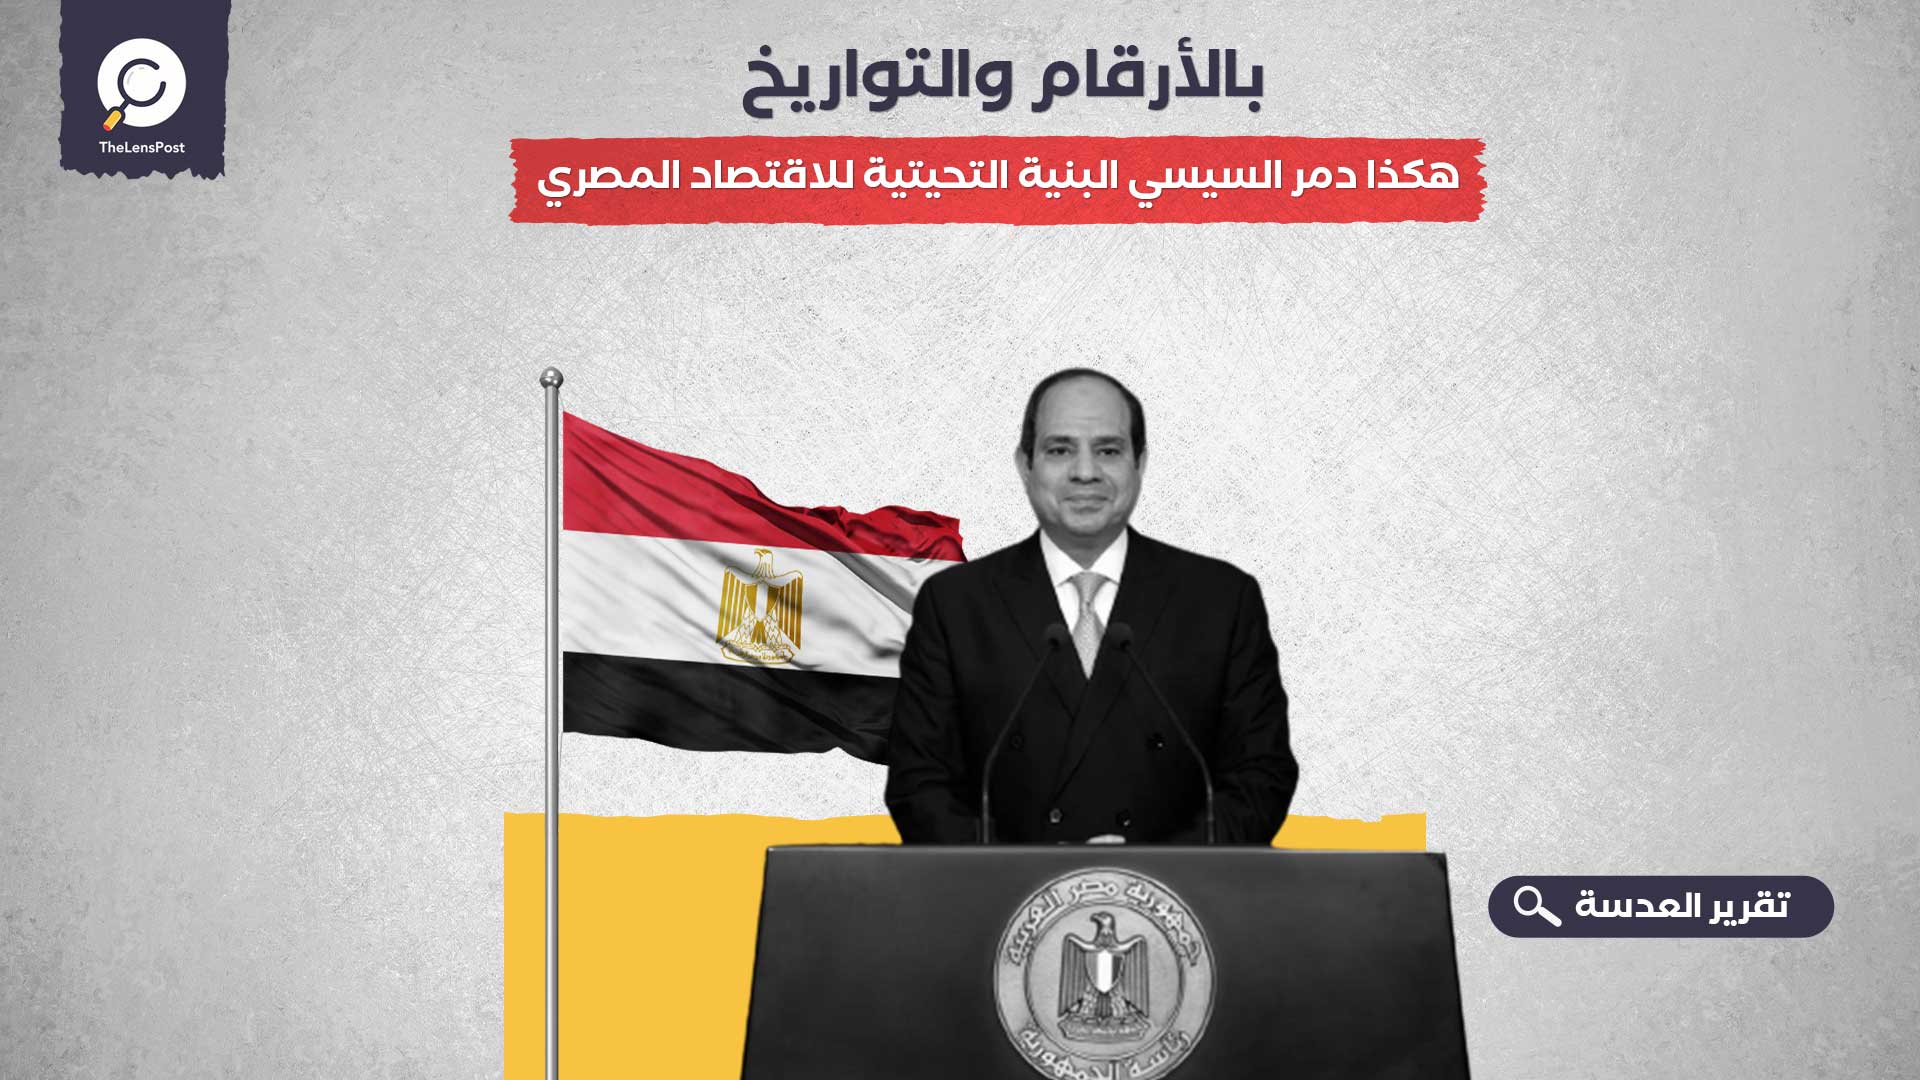 قبل تداعيات سد النهضة.. بالأرقام والتواريخ.. هكذا دمر السيسي البنية التحيتية للاقتصاد المصري